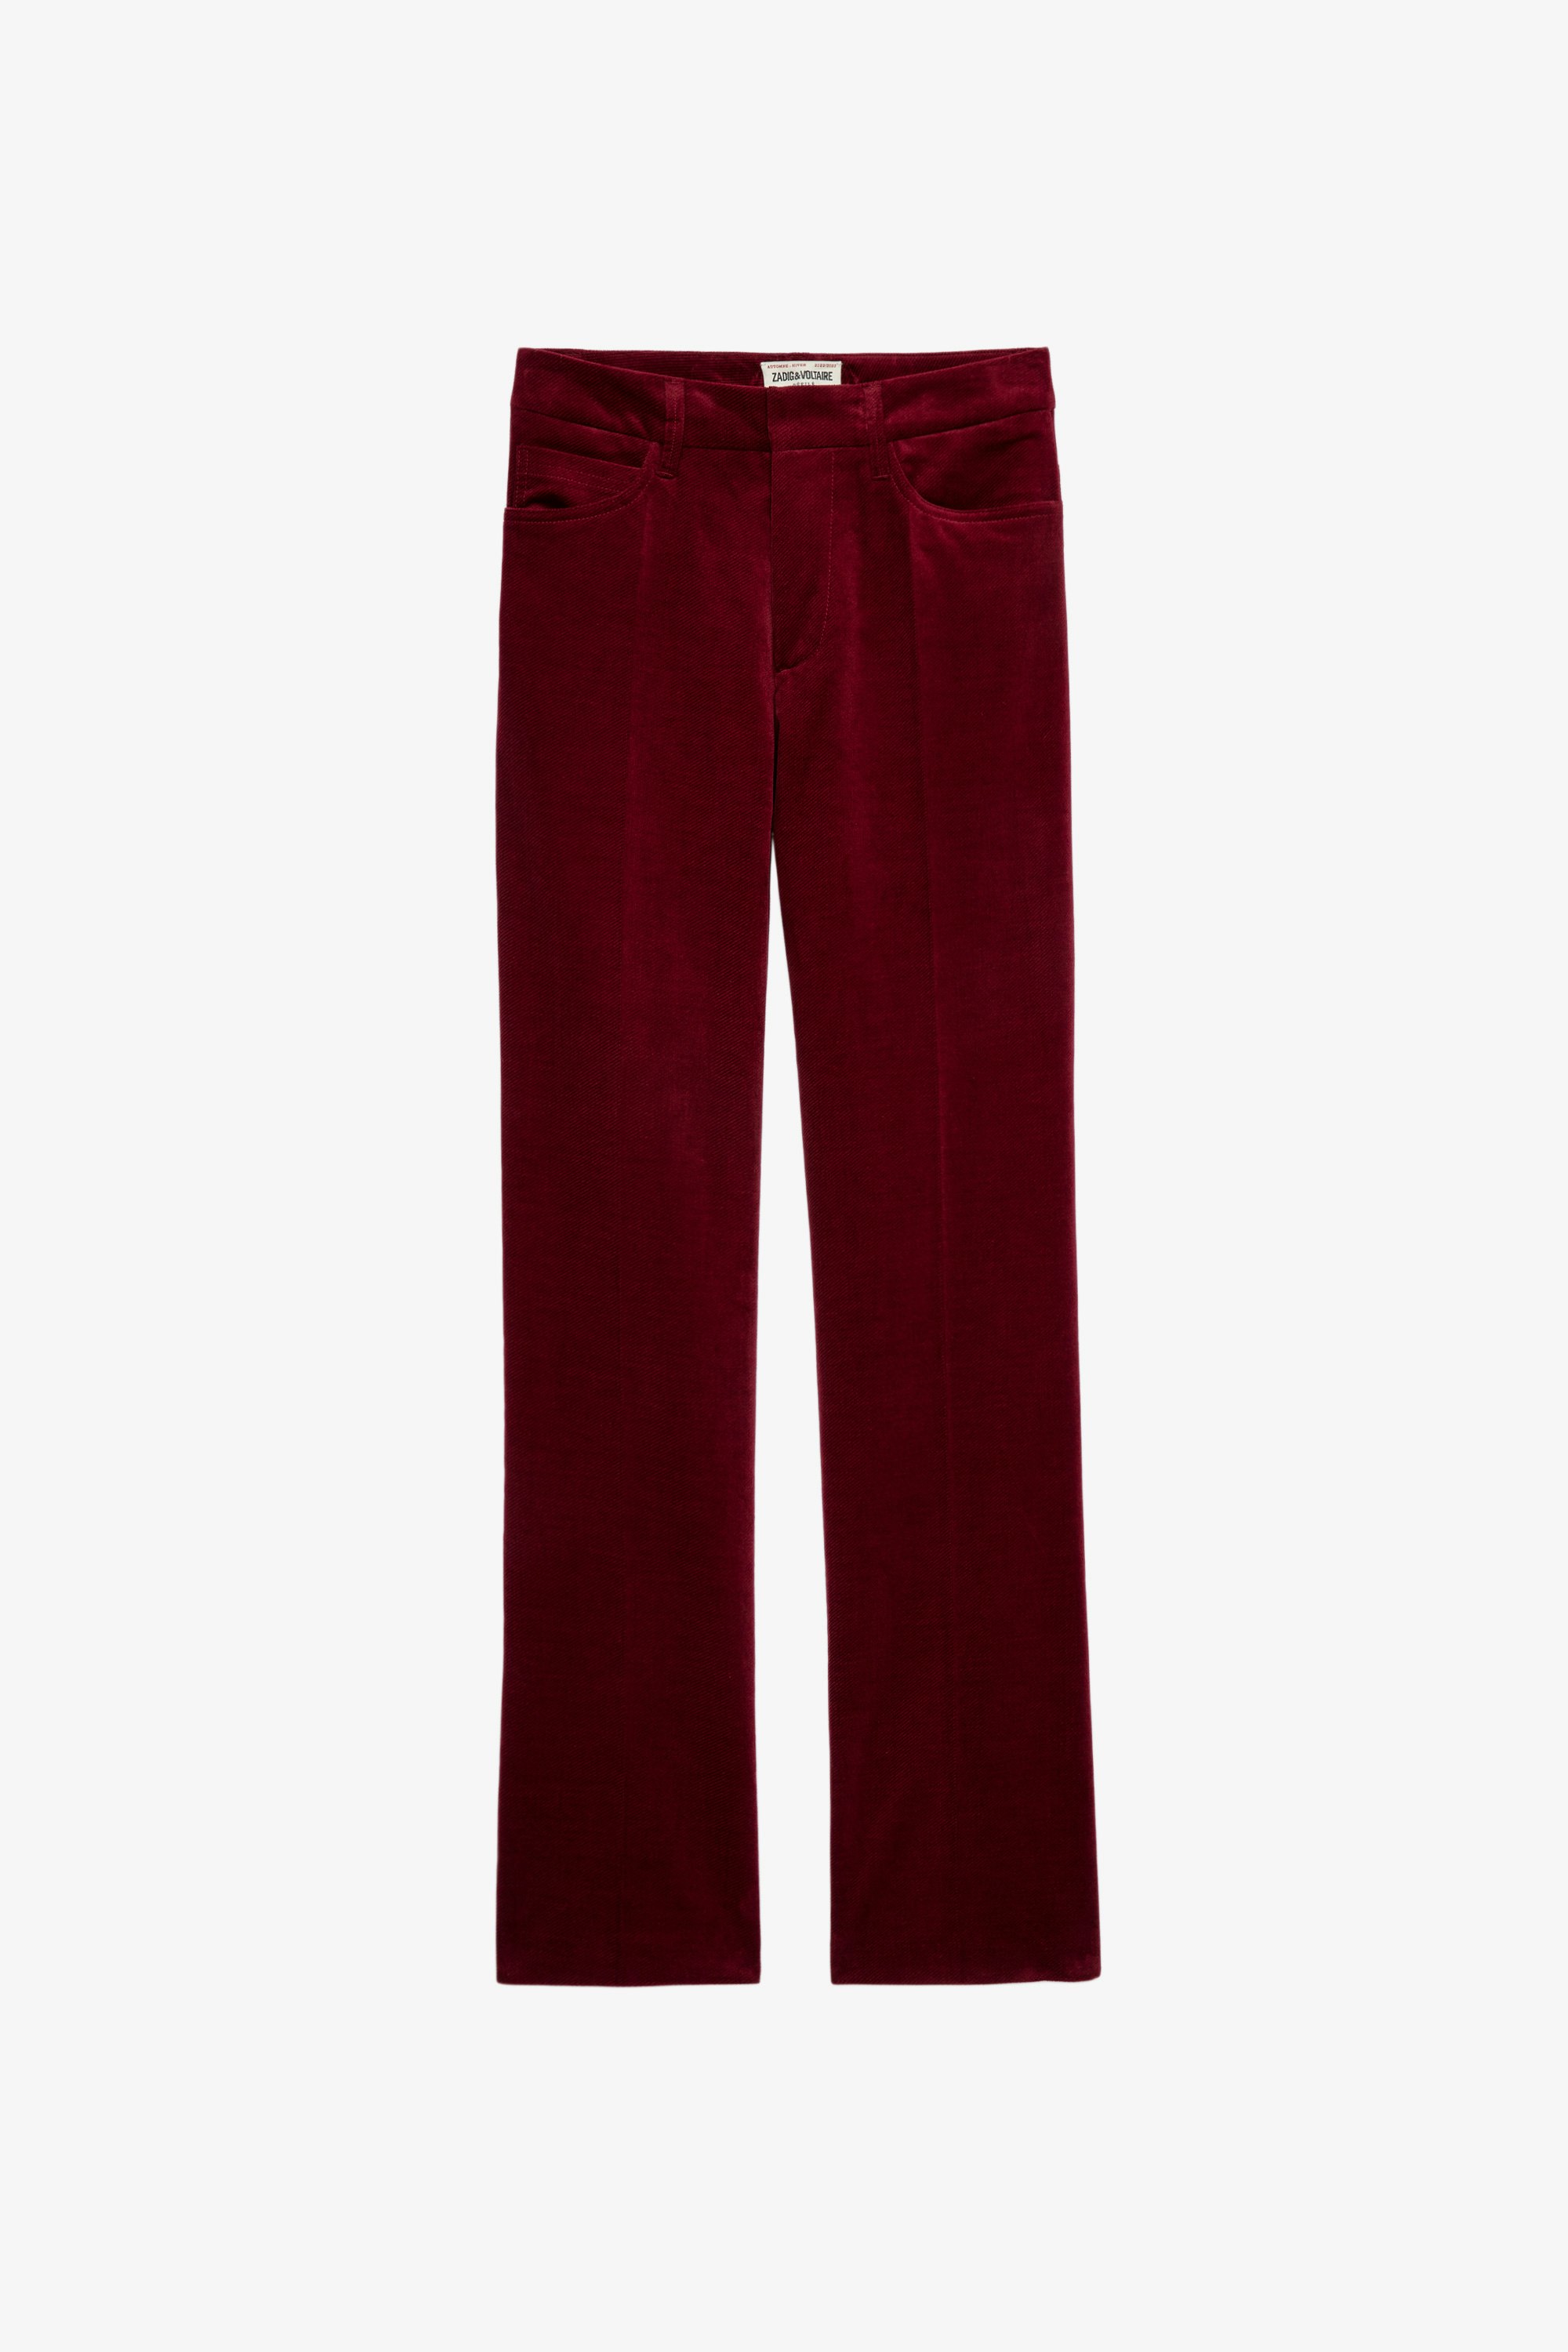 Pantalón de terciopelo Pista Pantalón ancho de terciopelo rojo para mujer